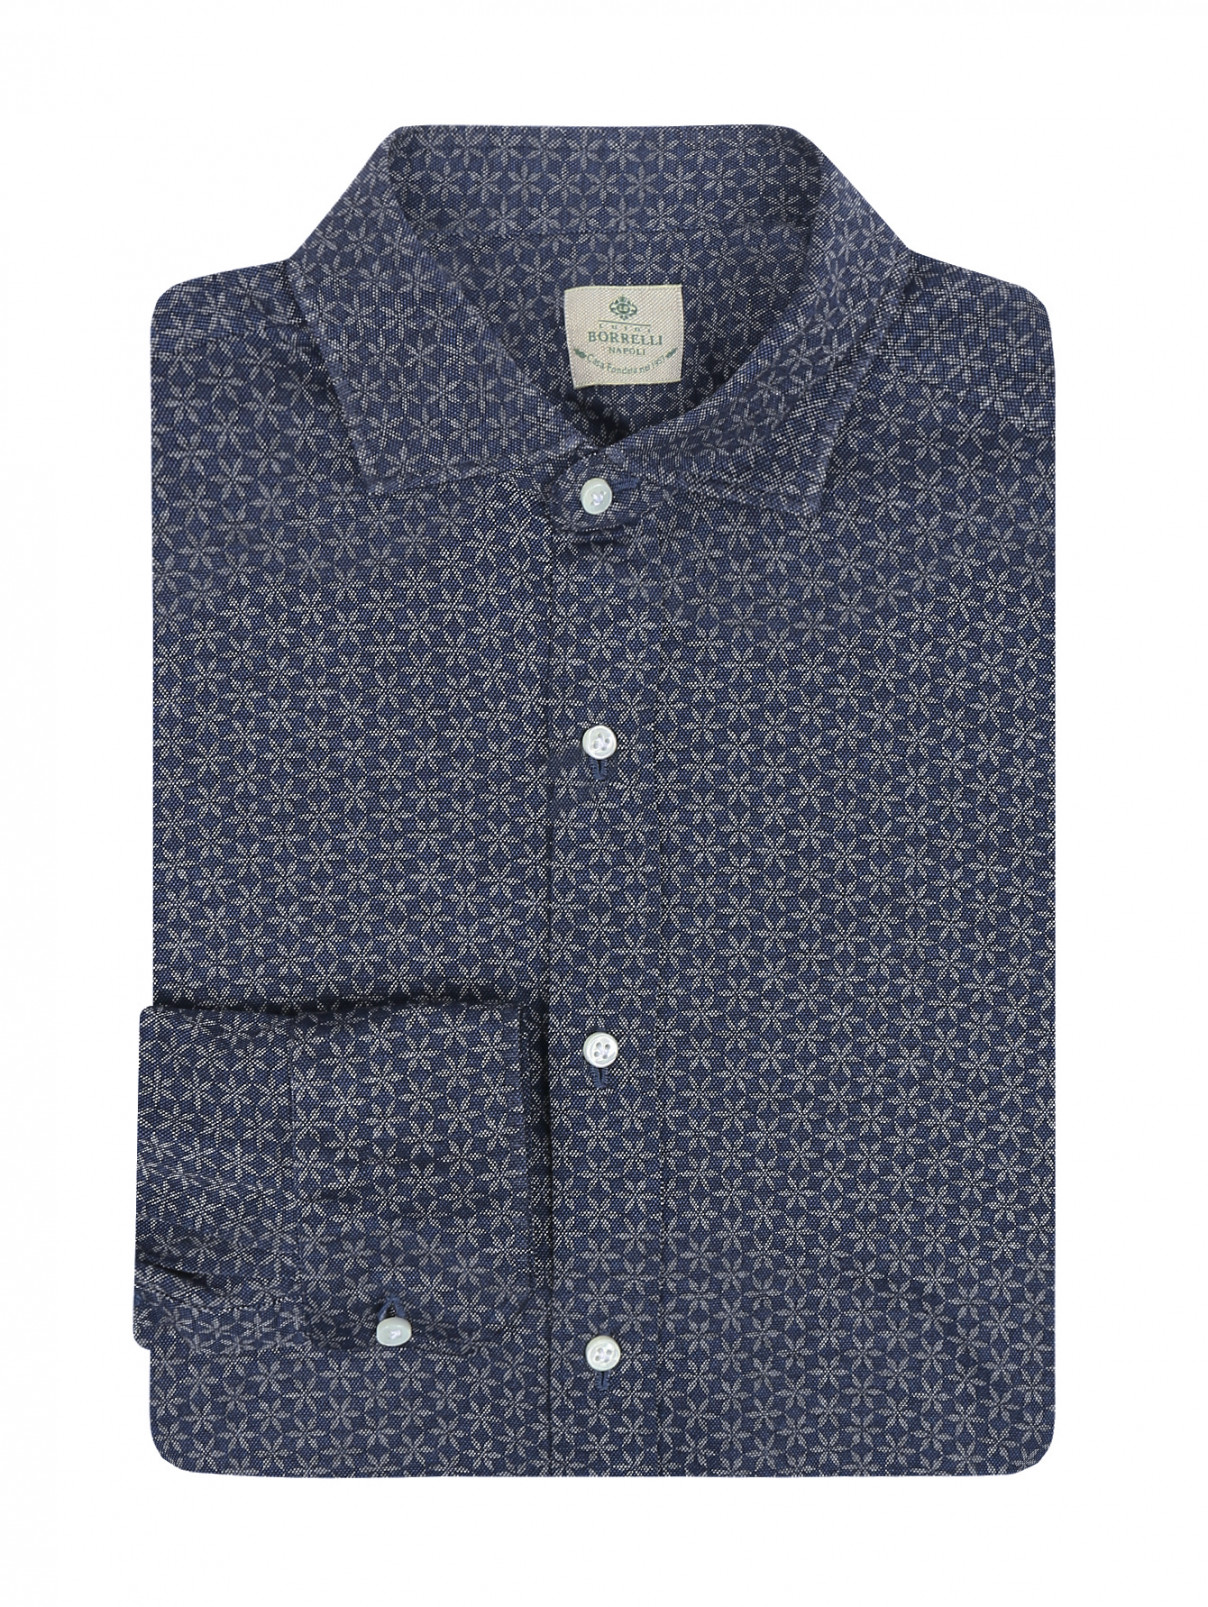 Рубашка из хлопка с узором Carrel  –  Общий вид  – Цвет:  Синий